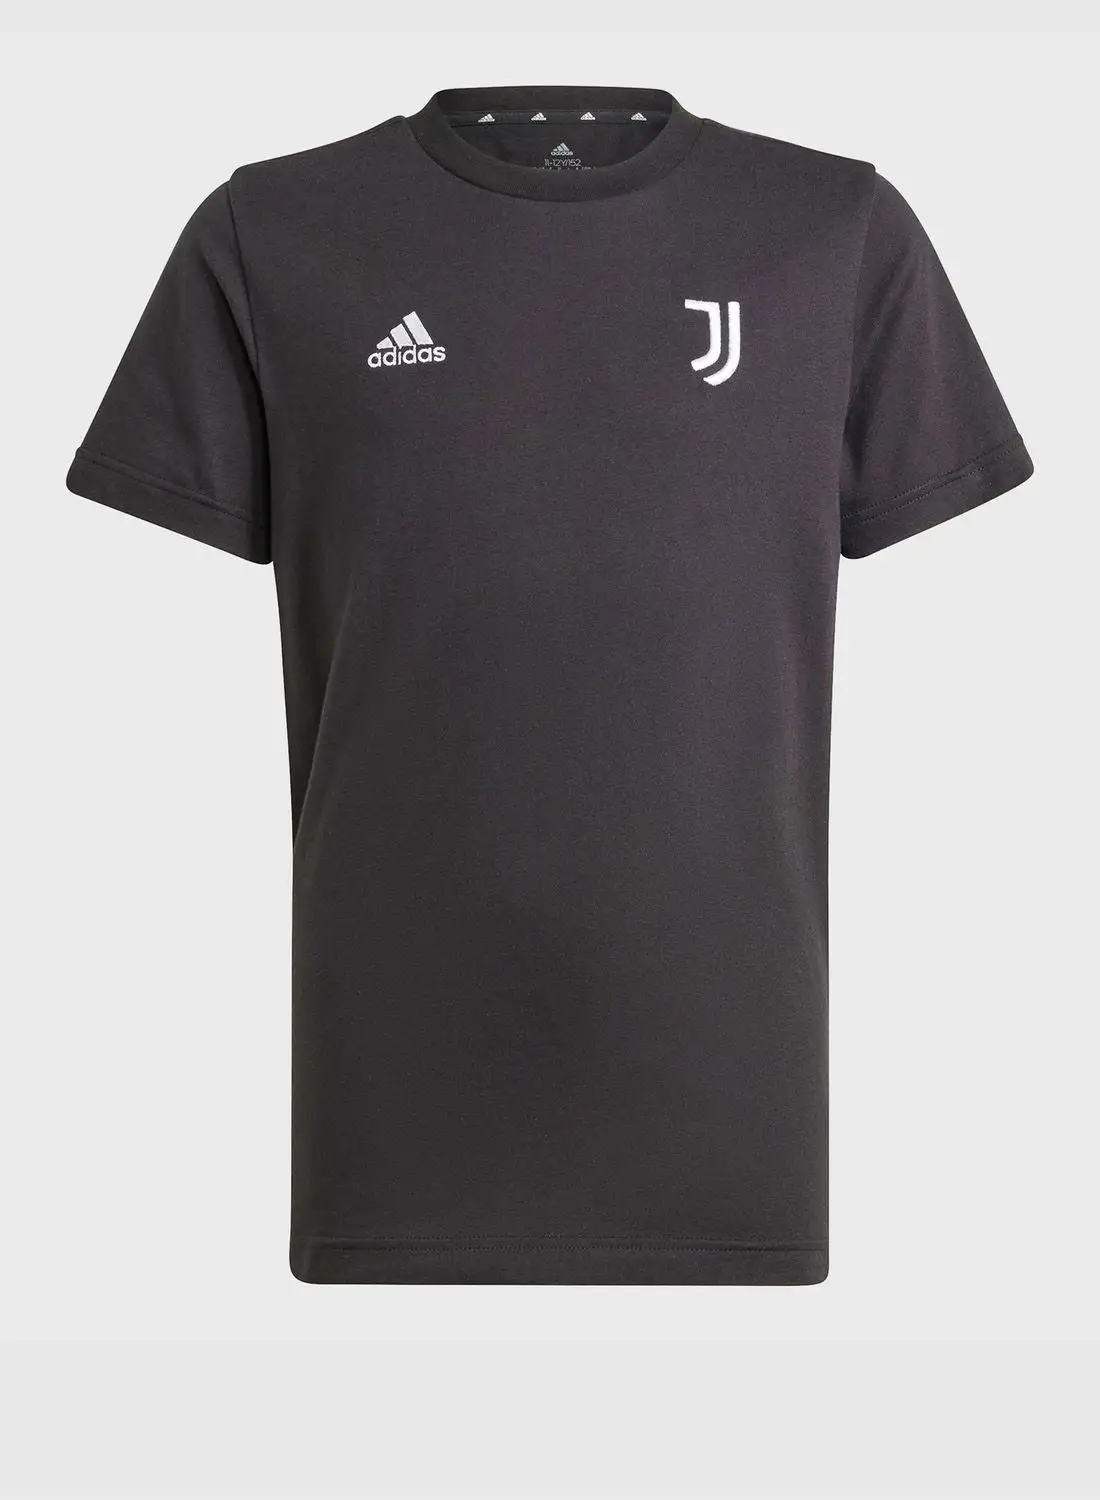 Adidas Kids Juventus T-Shirt